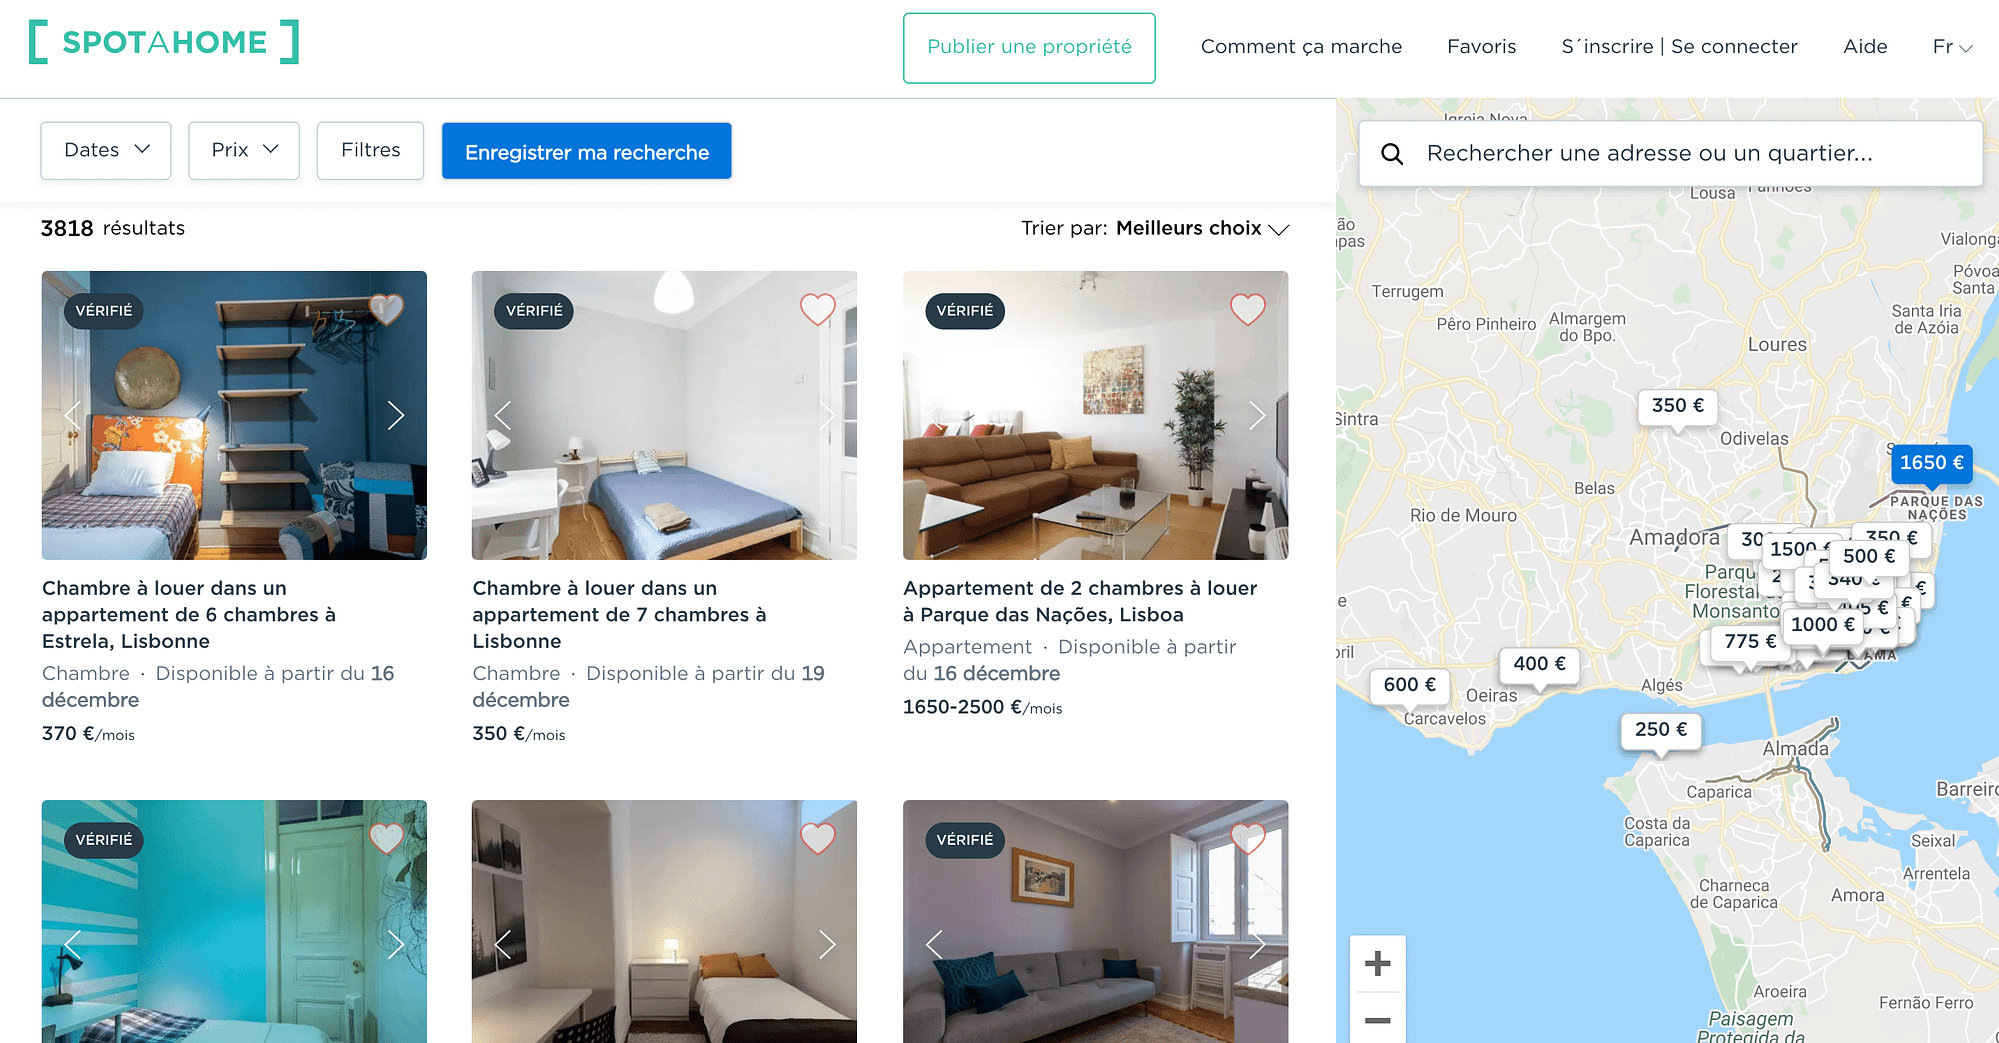 Spotahome est l'airbnb des logements étudiants à Lisbonne